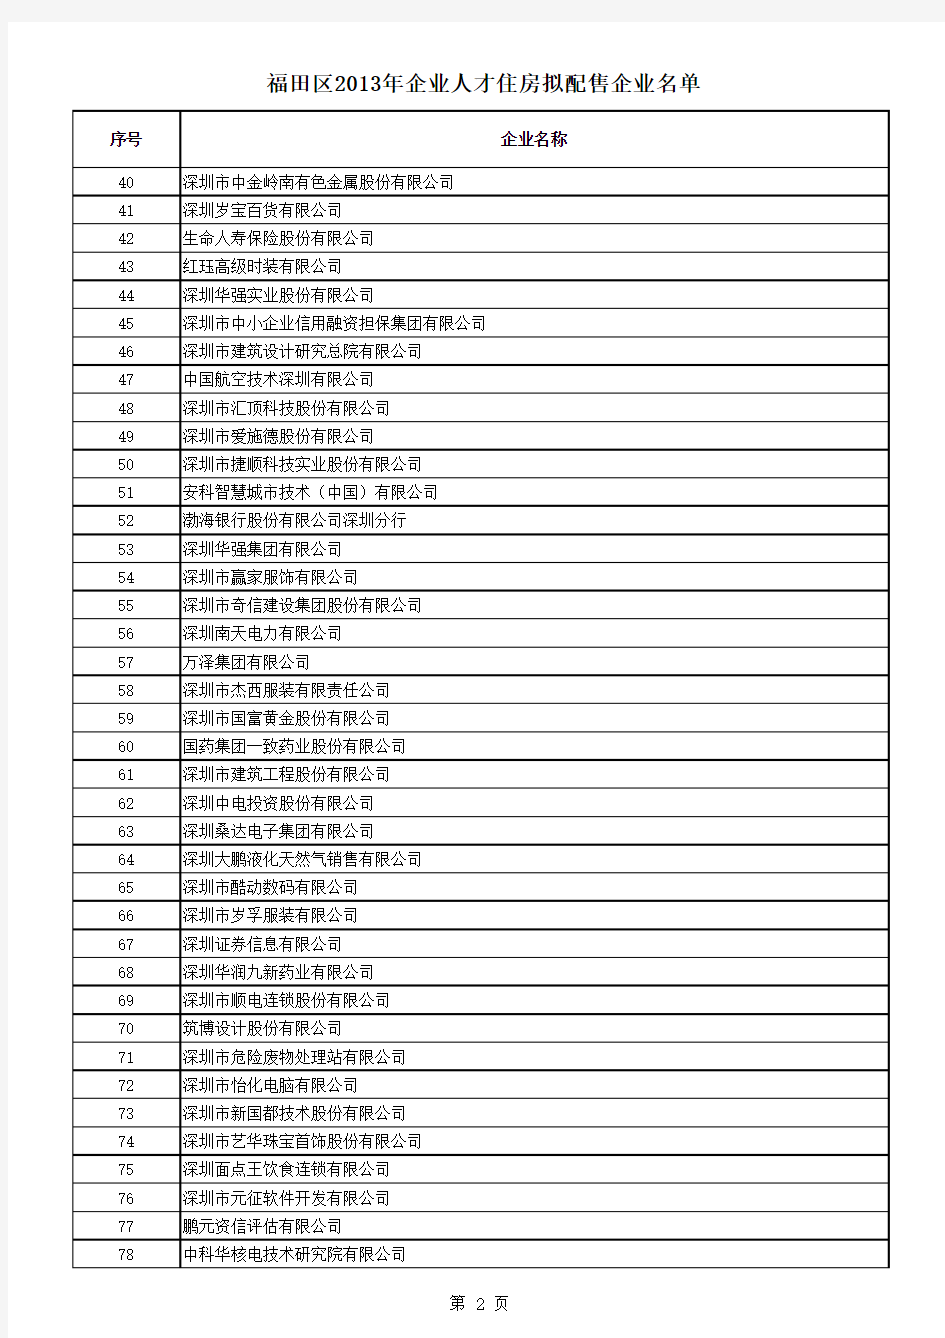 福田区2013年企业人才住房拟配售企业名单